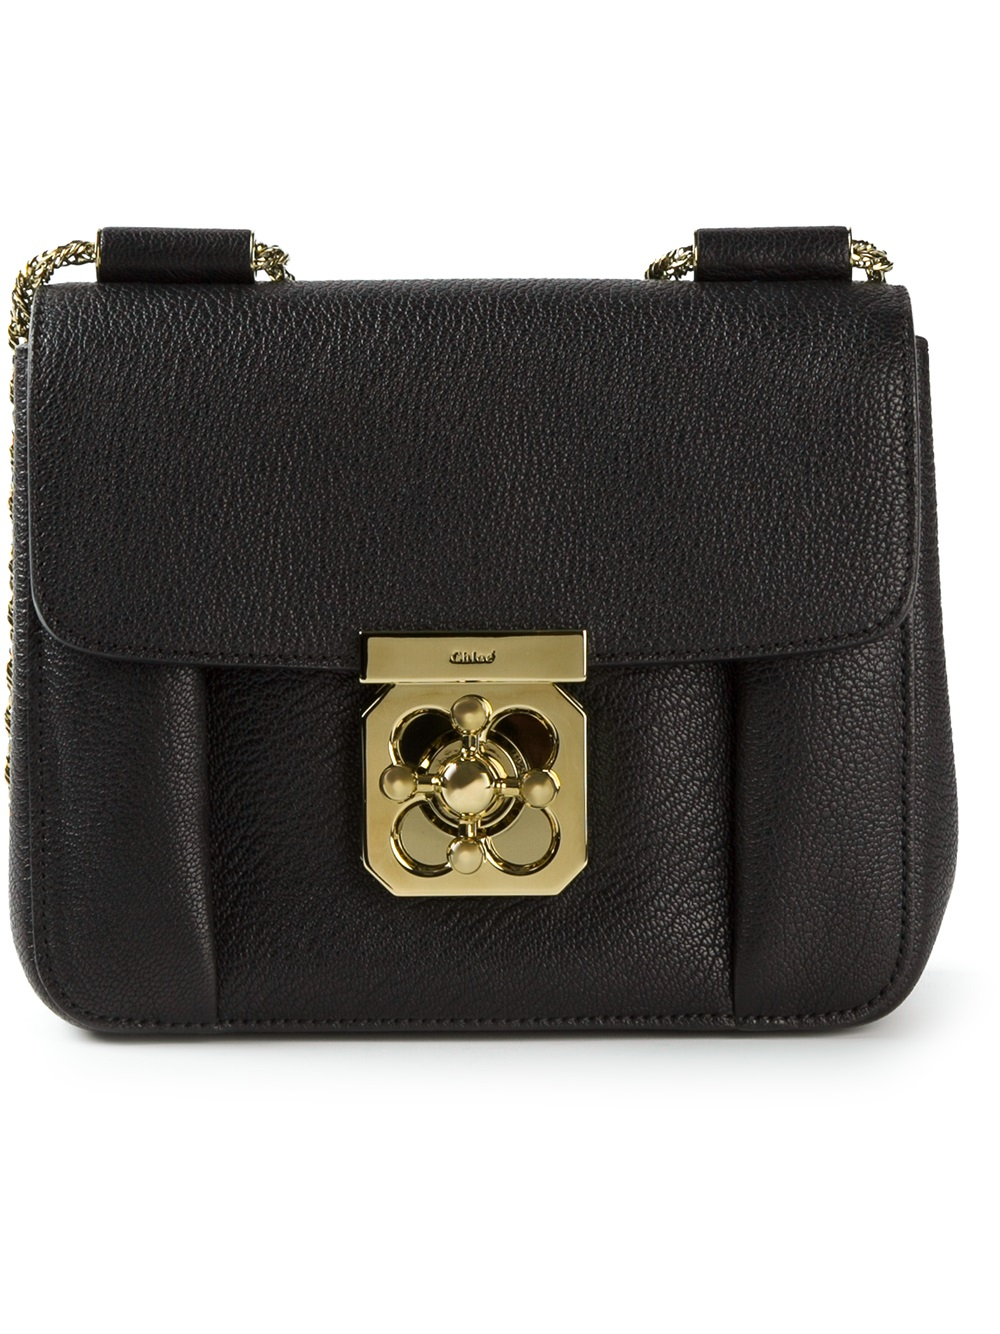 chloe black handbag - chloe small elsie shoulder bag, chloe online